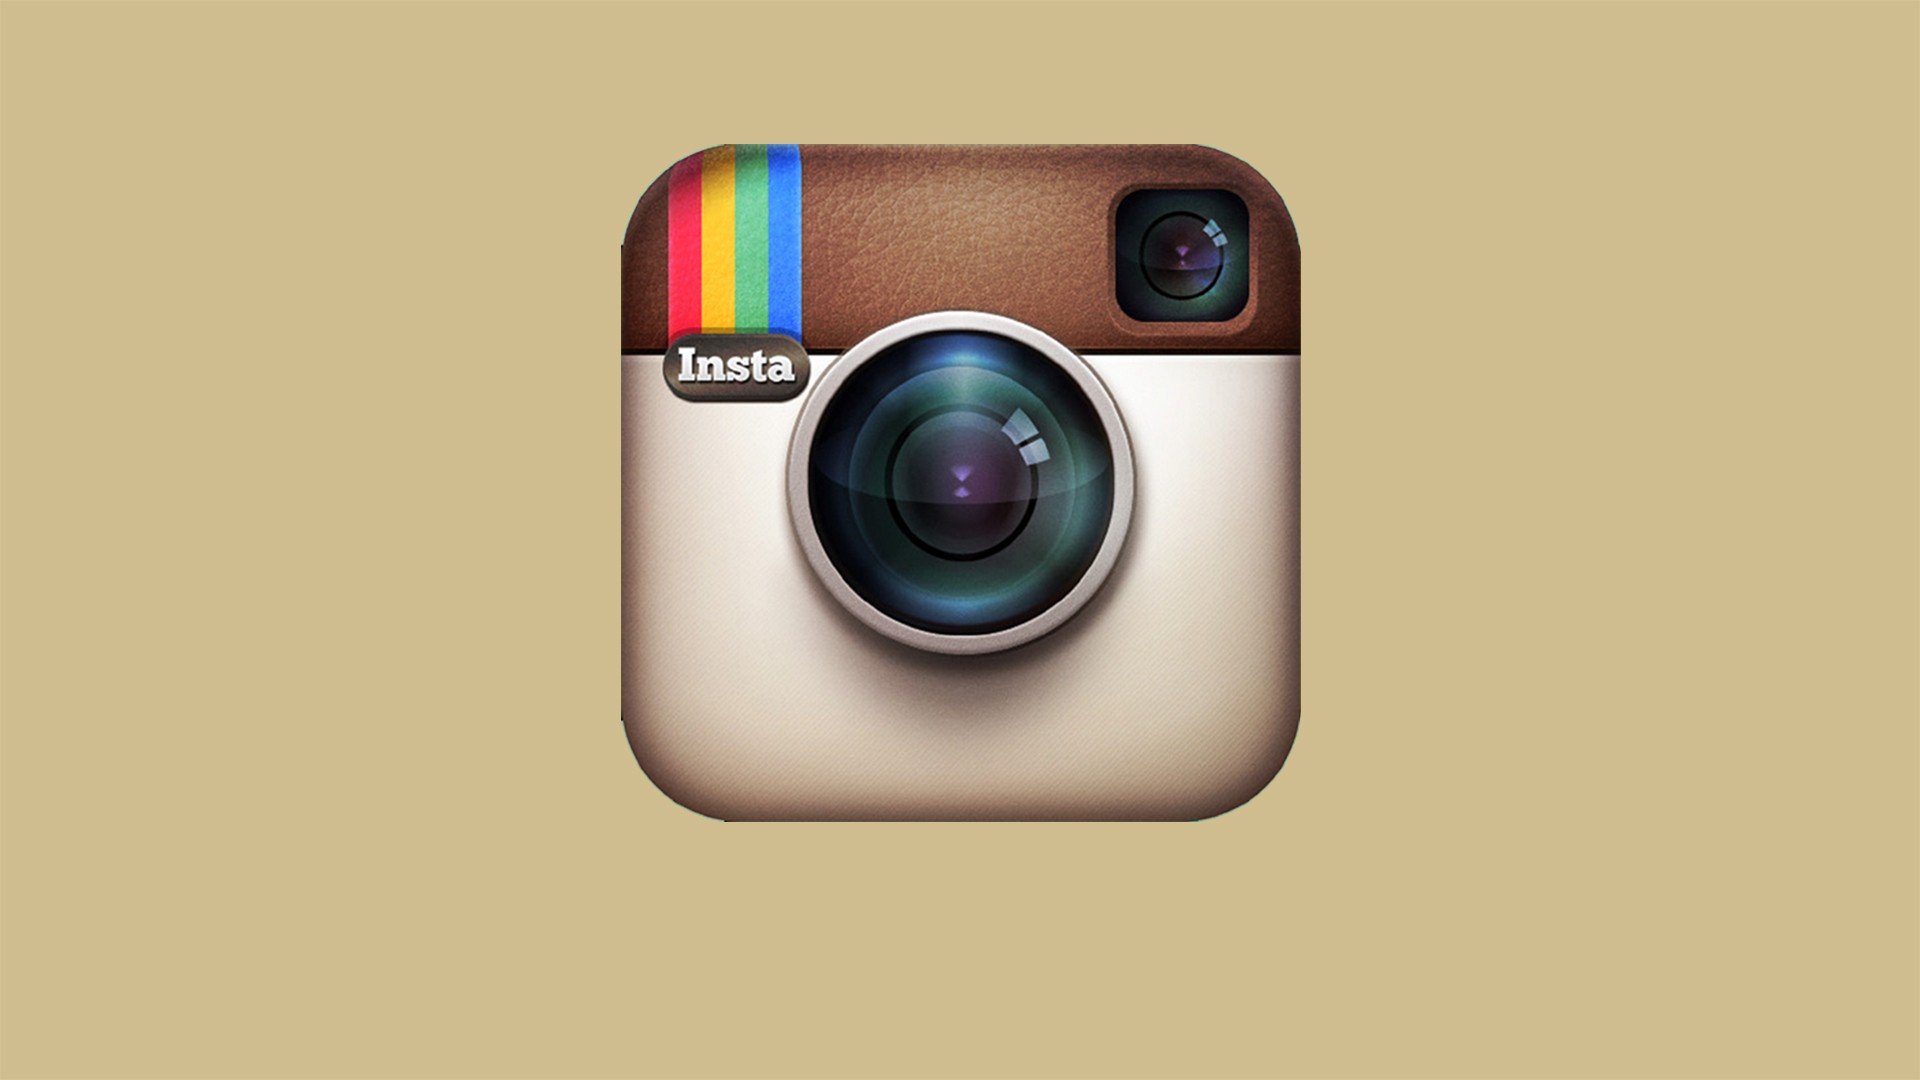  logos instagram logo symbol social site social network hd wallpaper